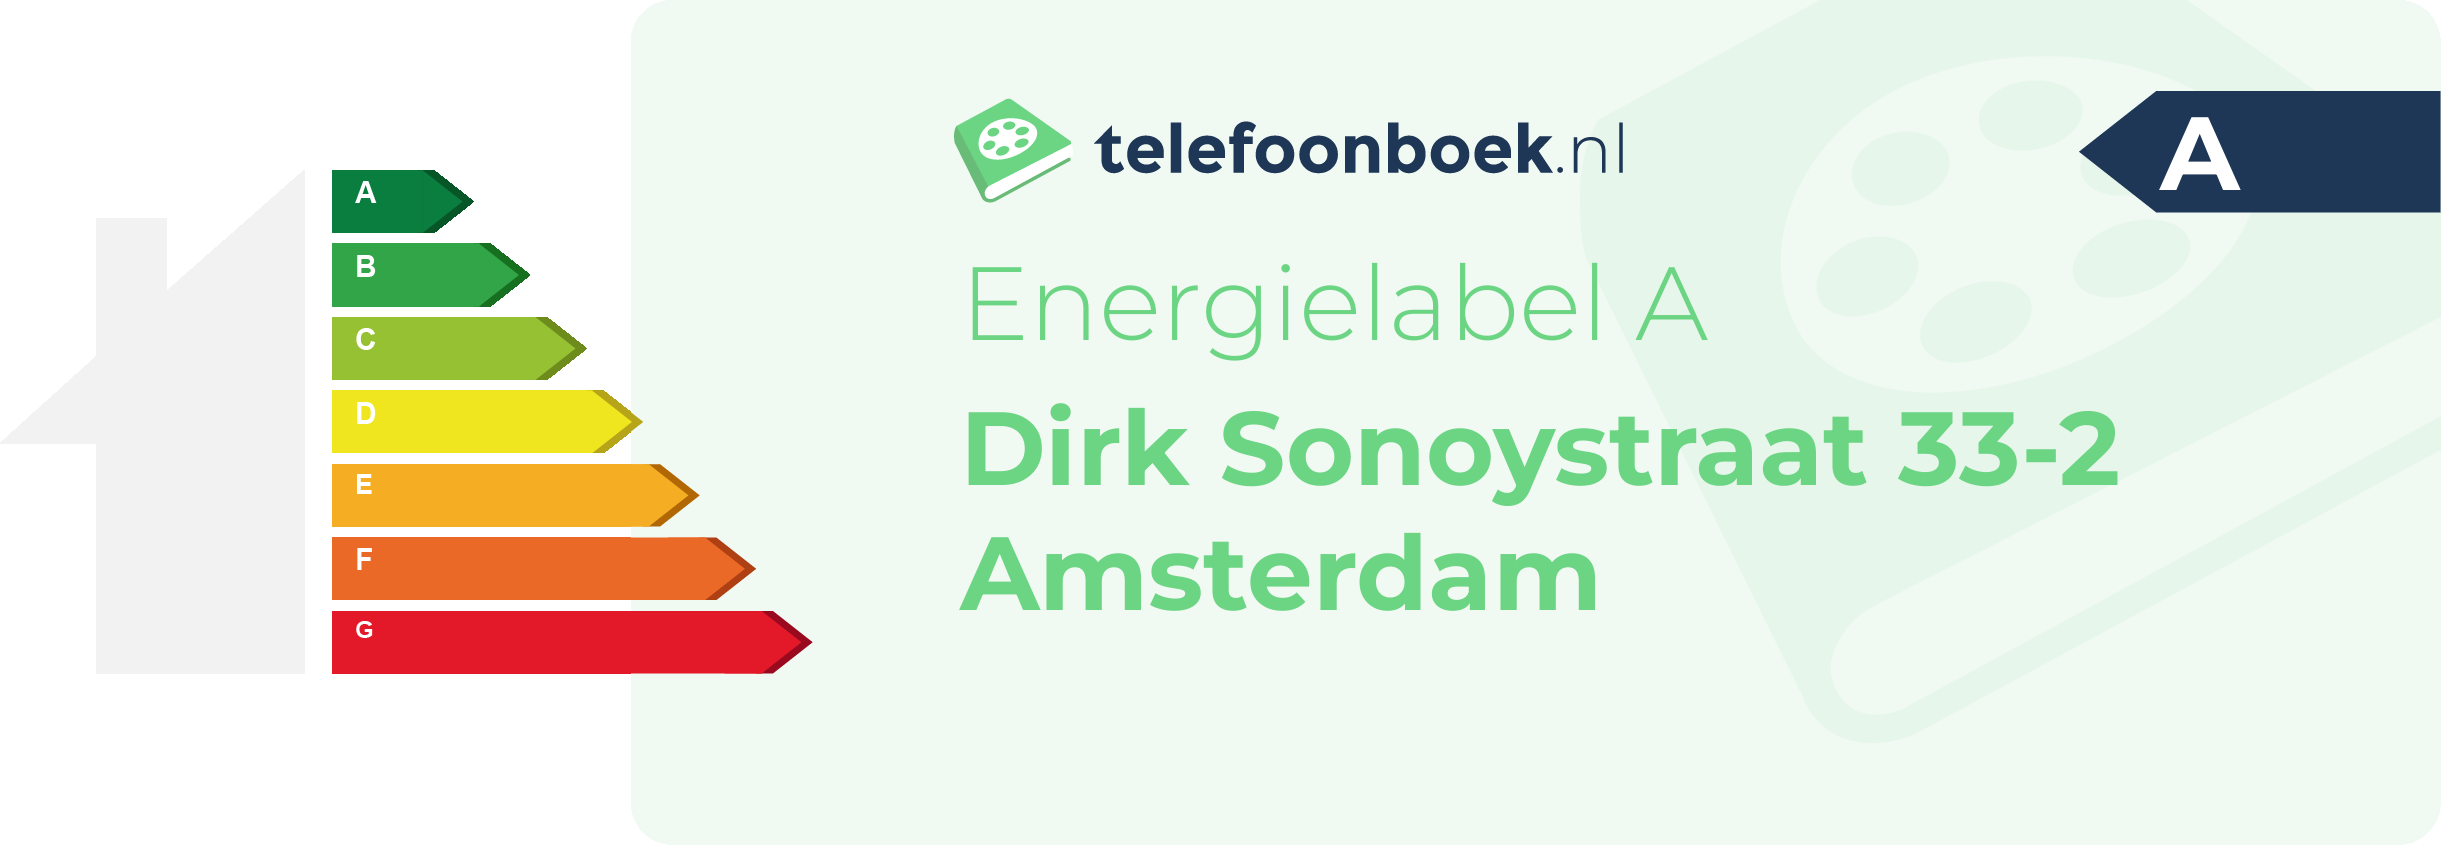 Energielabel Dirk Sonoystraat 33-2 Amsterdam